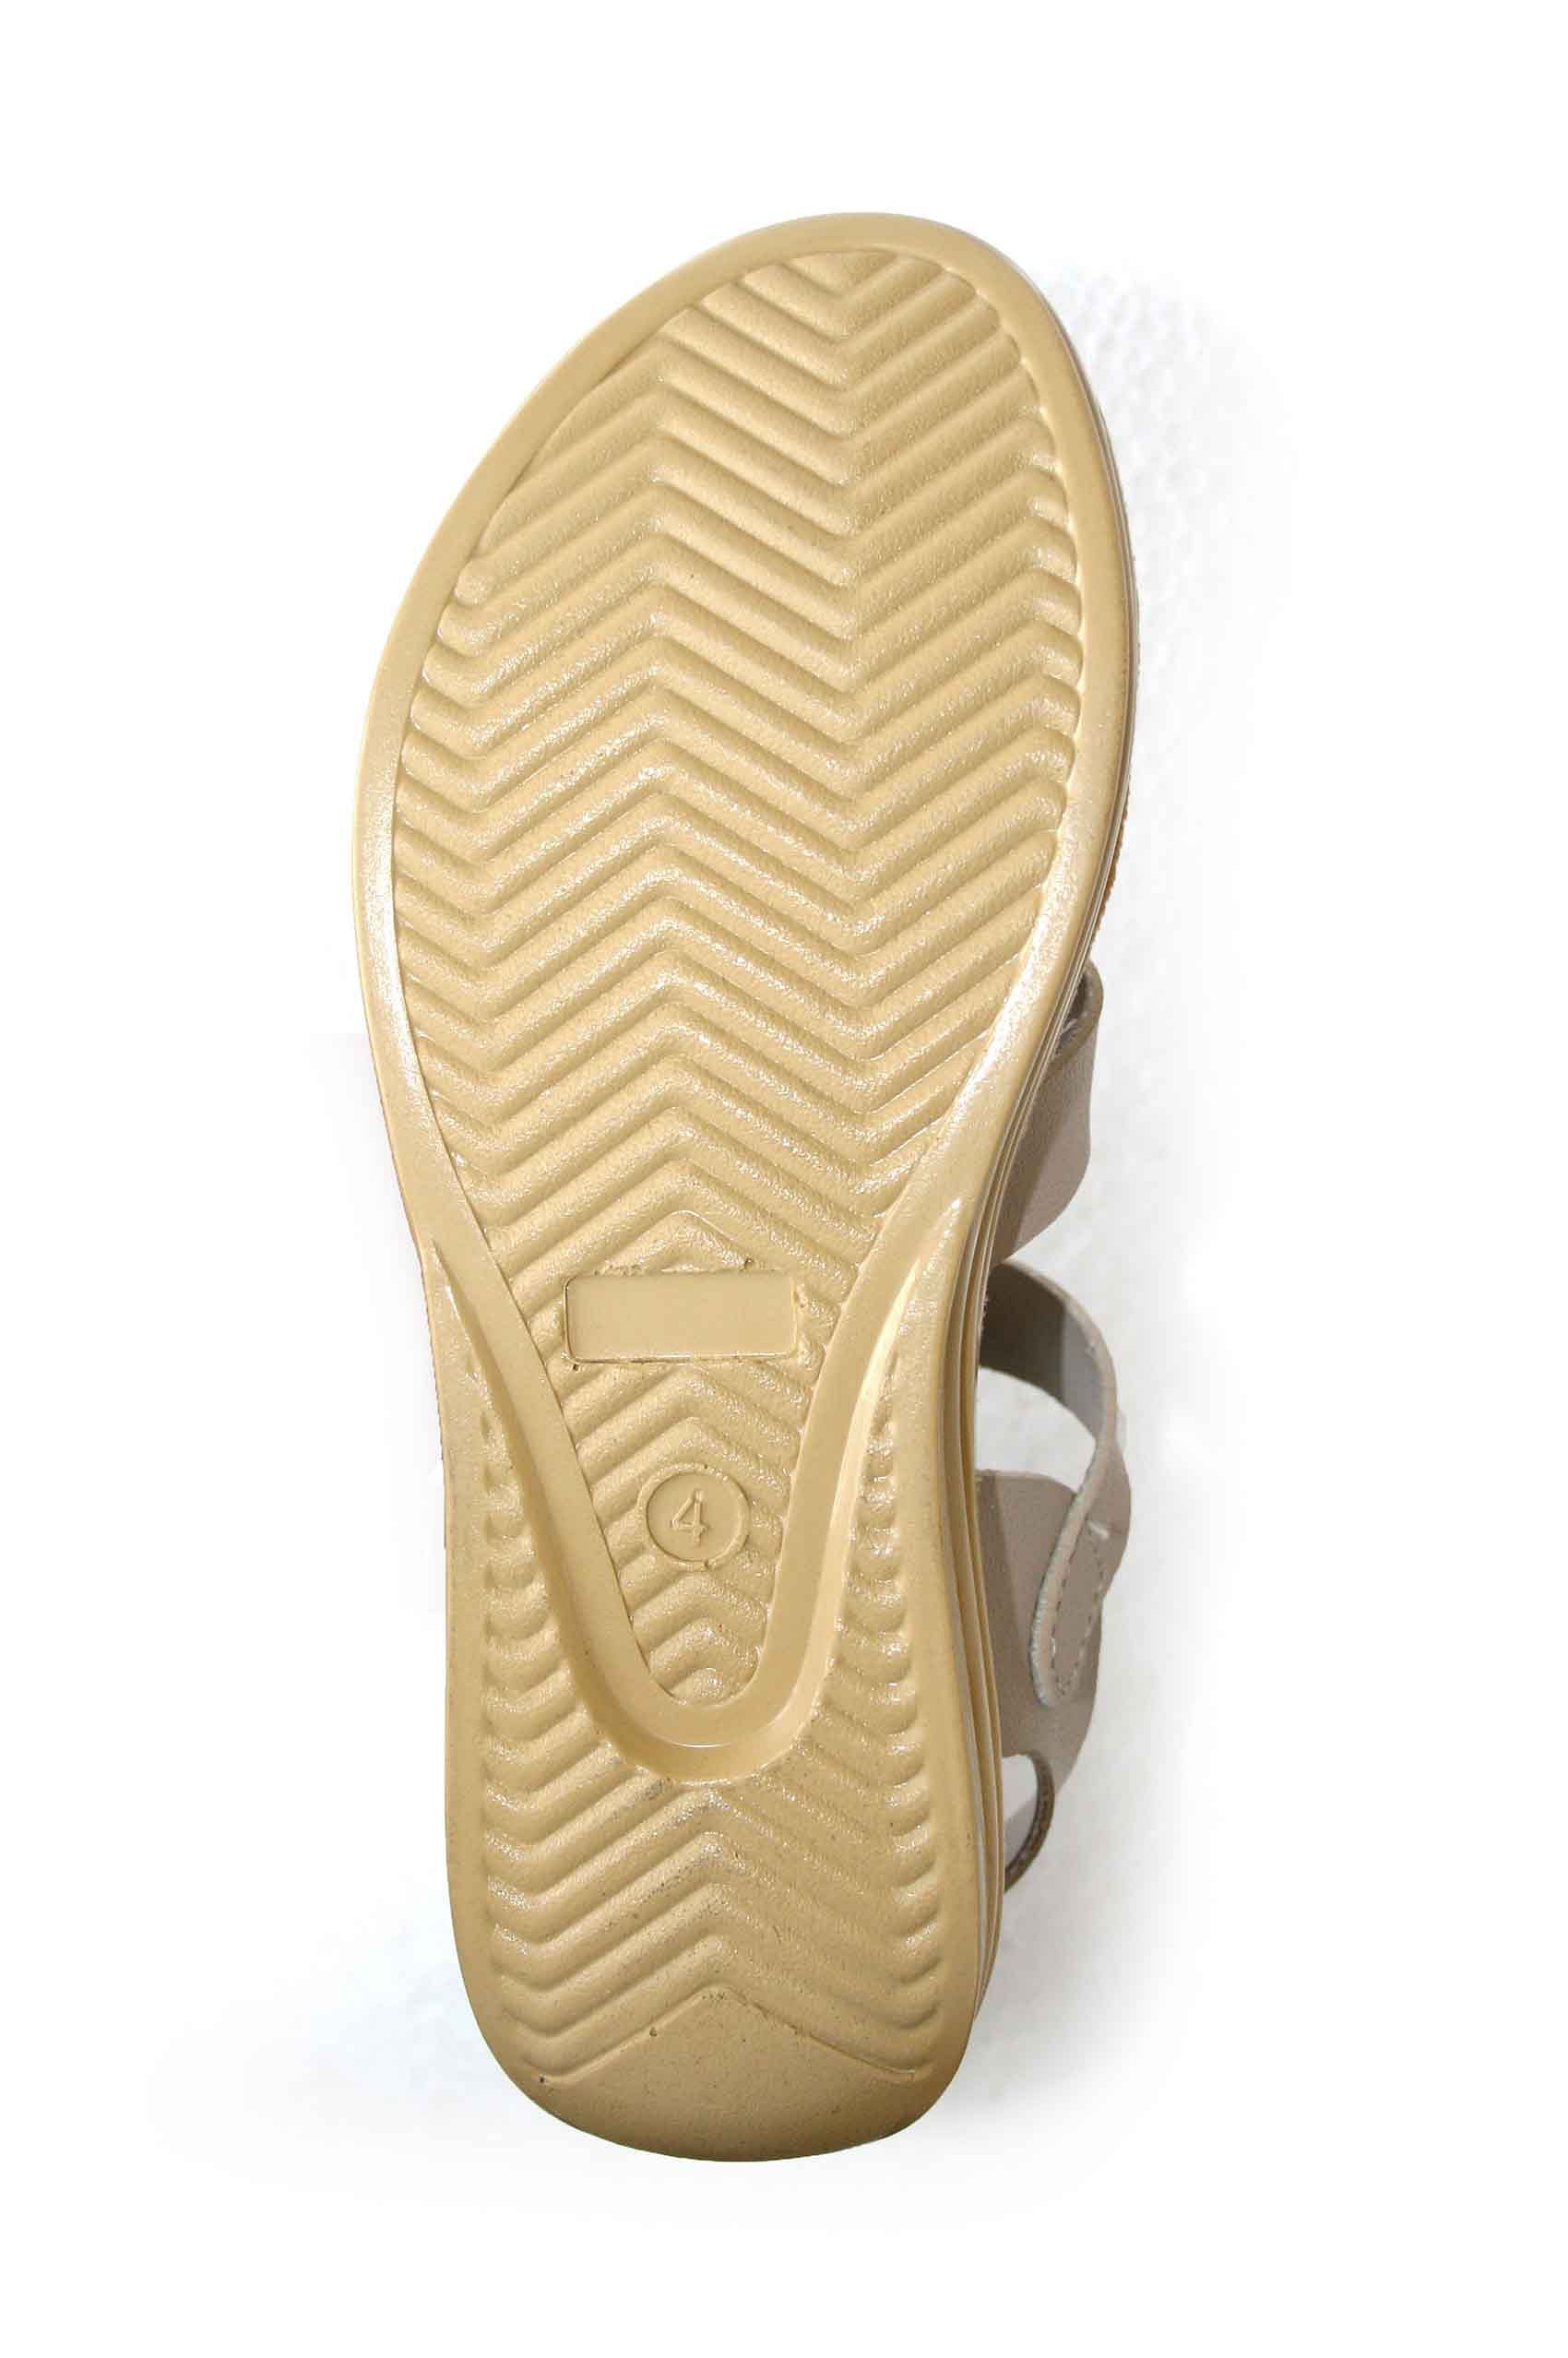 Pair-it Ladies Sandals-Pedals-107-Beige